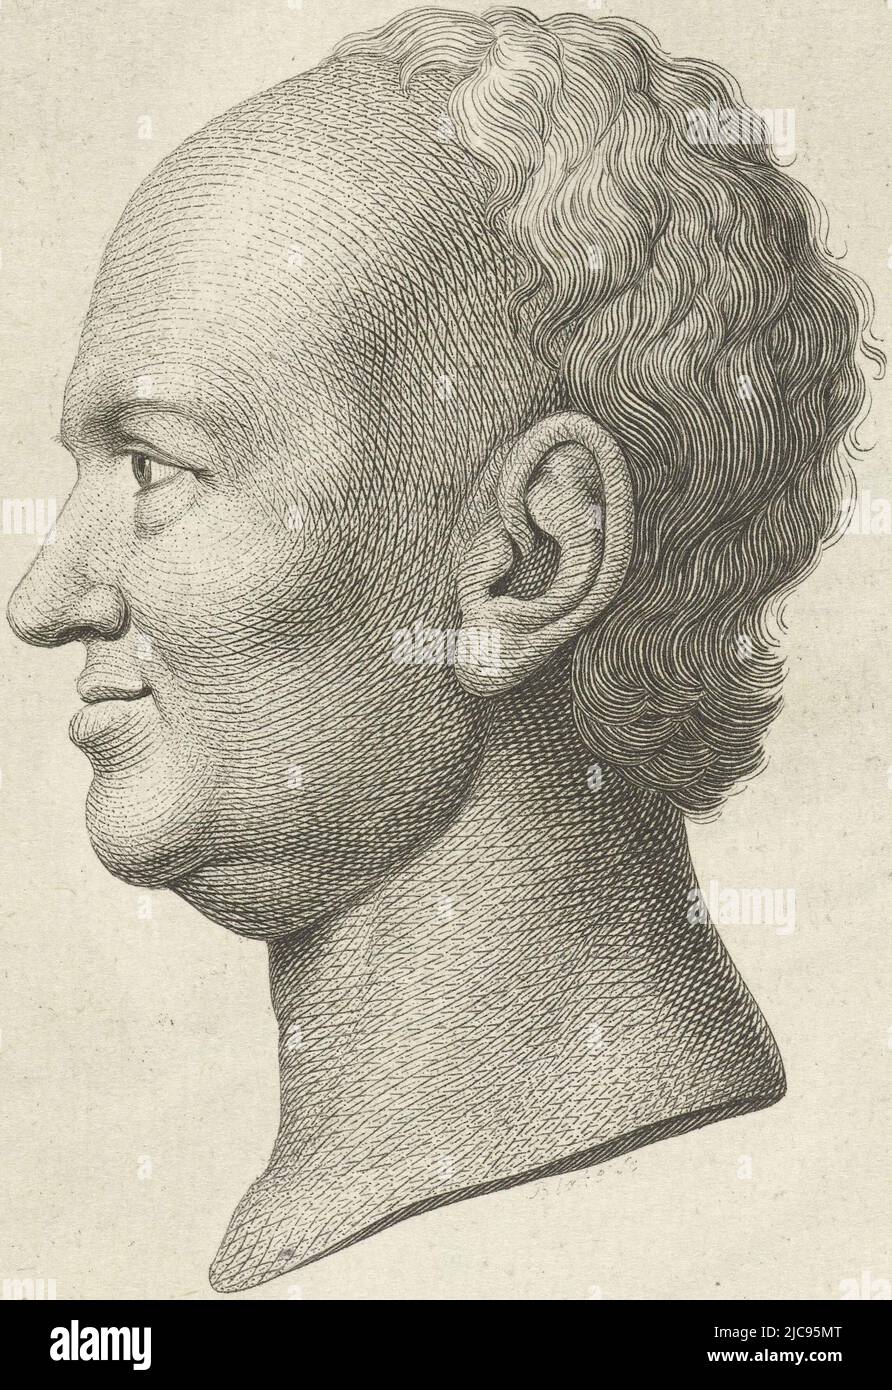 Chef d'un homme balding, en profil. Peut-être un portrait de Spalding. Portrait d'un homme, imprimeur: William Blake, (mentionné sur l'objet), Angleterre, 1767 - 1827, papier, gravure, h 134 mm × l 107 mm Banque D'Images